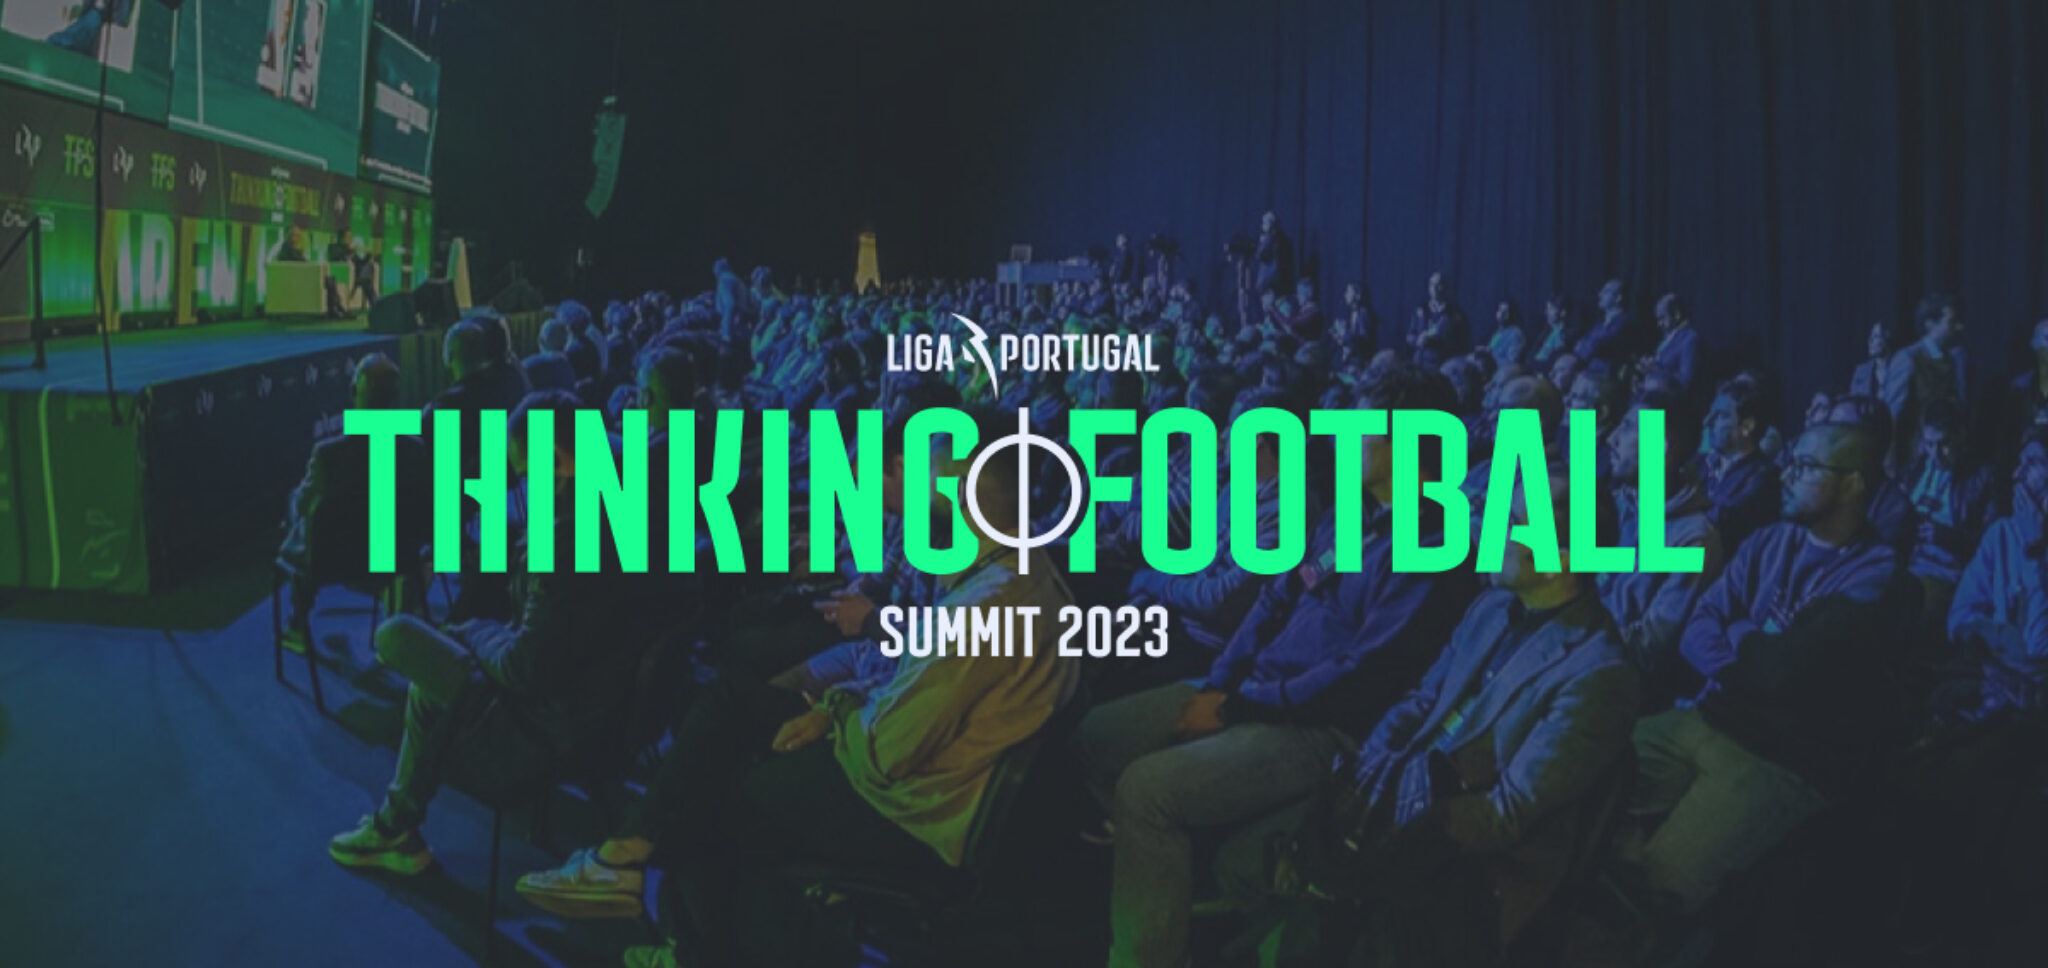 thinking-football-summit-e-record-renovam-parceria